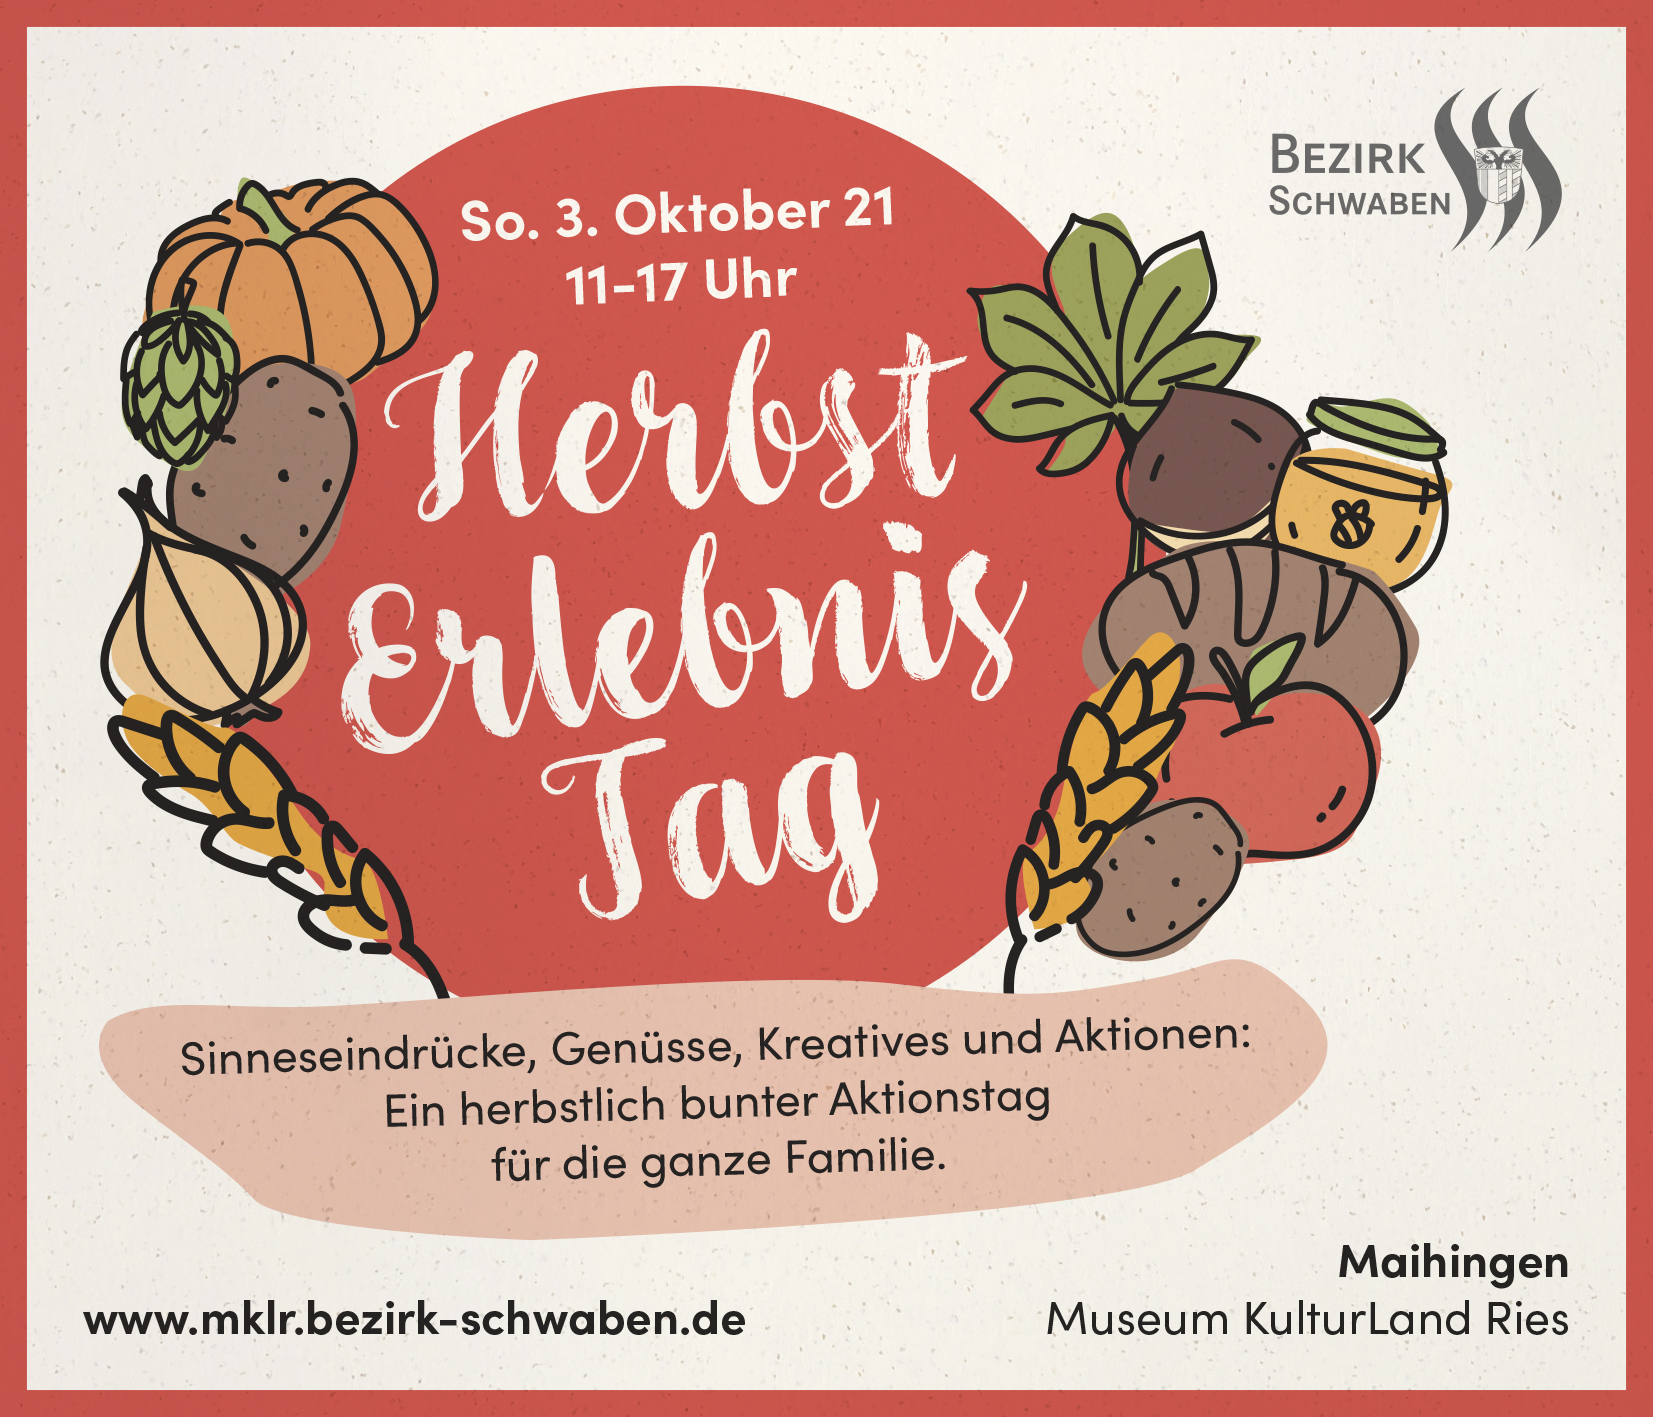 HerbstErlebnisTag - Museum KulturLand Ries feiert Erntedank